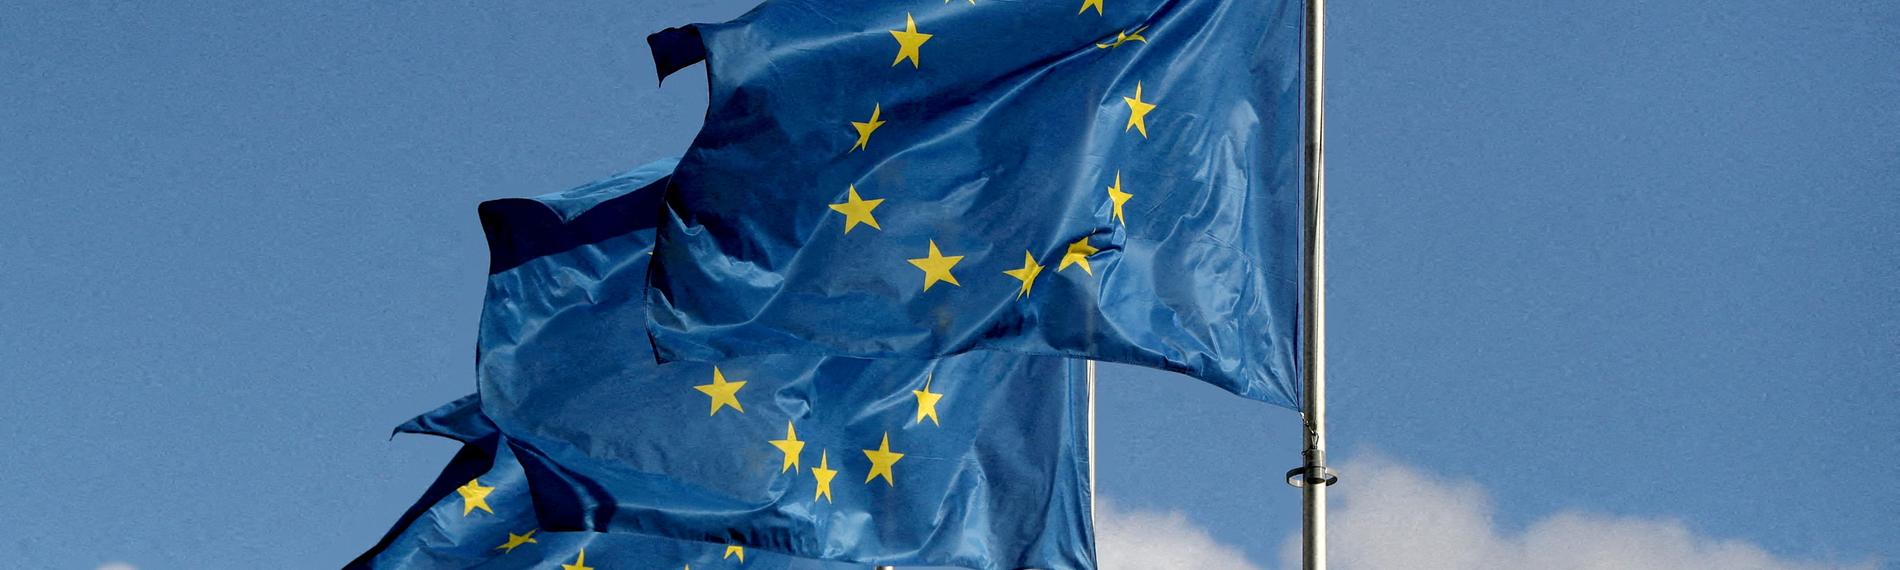 Fahnen der europäischen Union wehen vor der EU-Kommission in Brüssel.